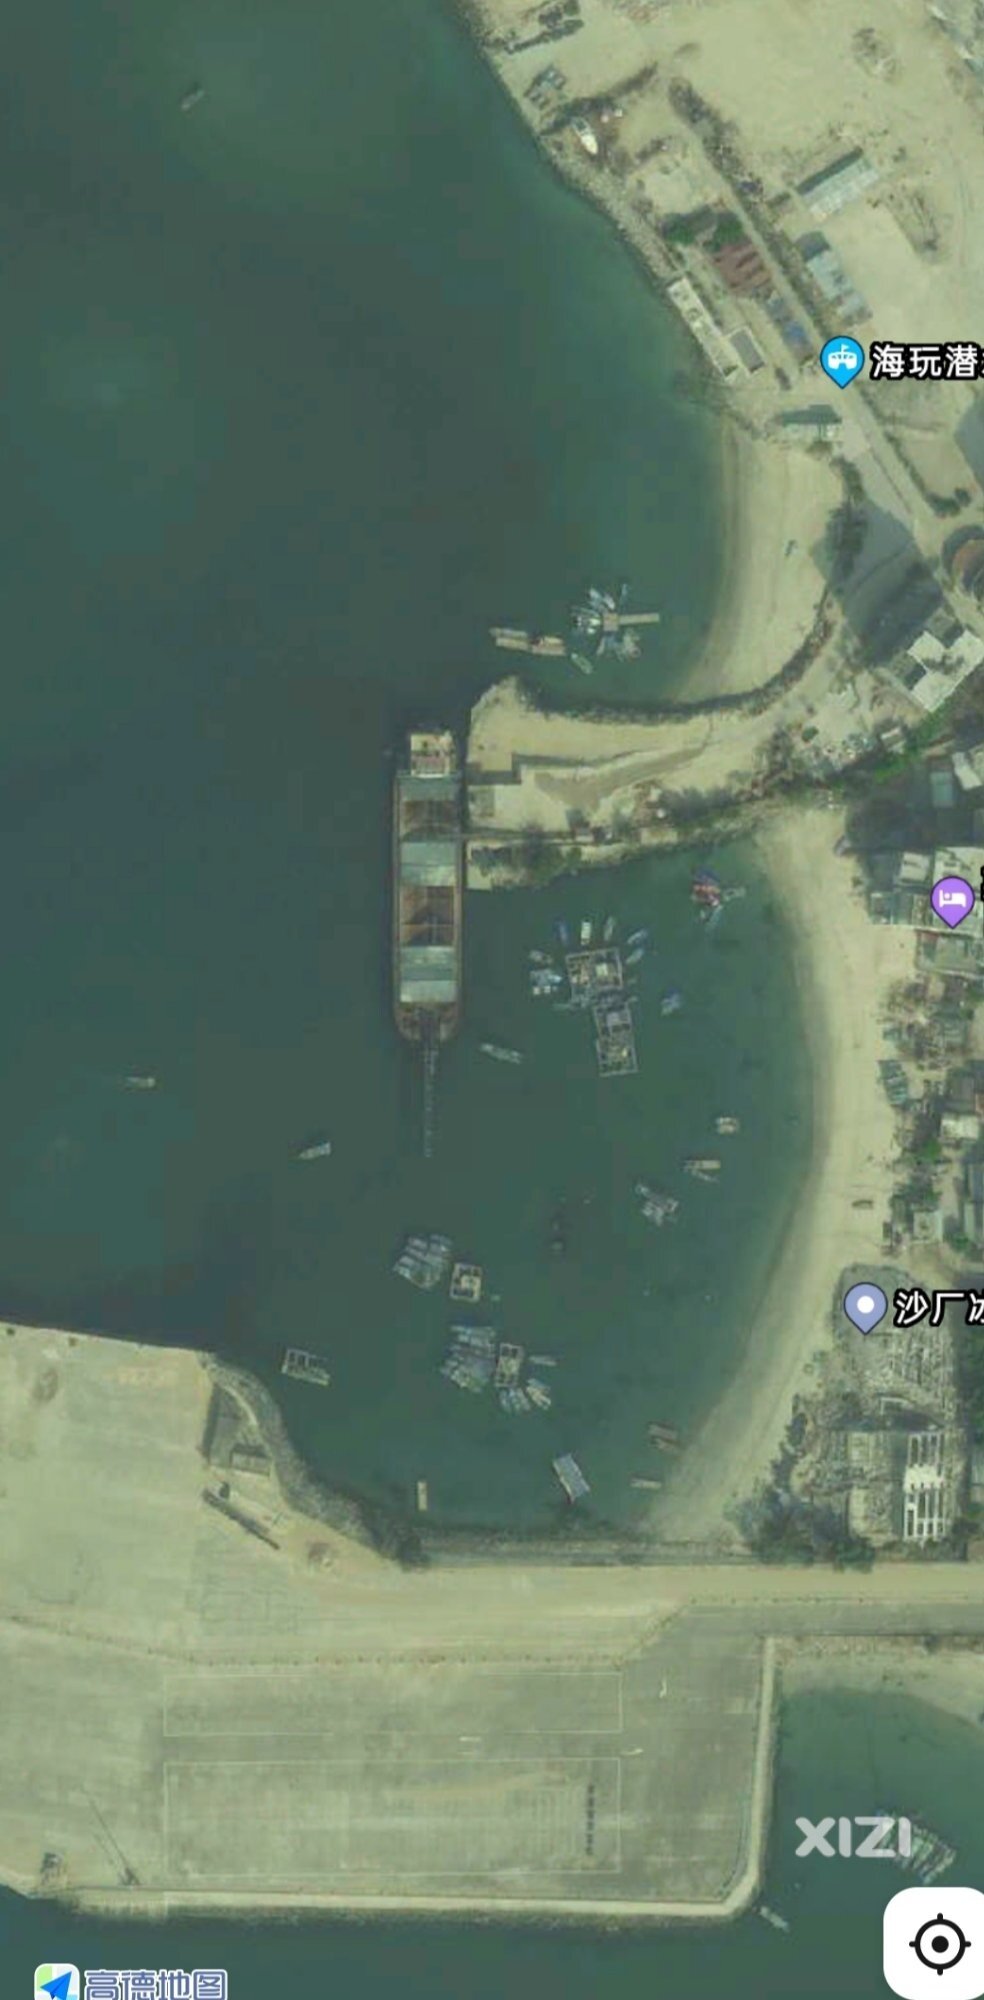 惠州港的惠东港货物年吞吐量不到800万吨。证明惠东发展确实慢